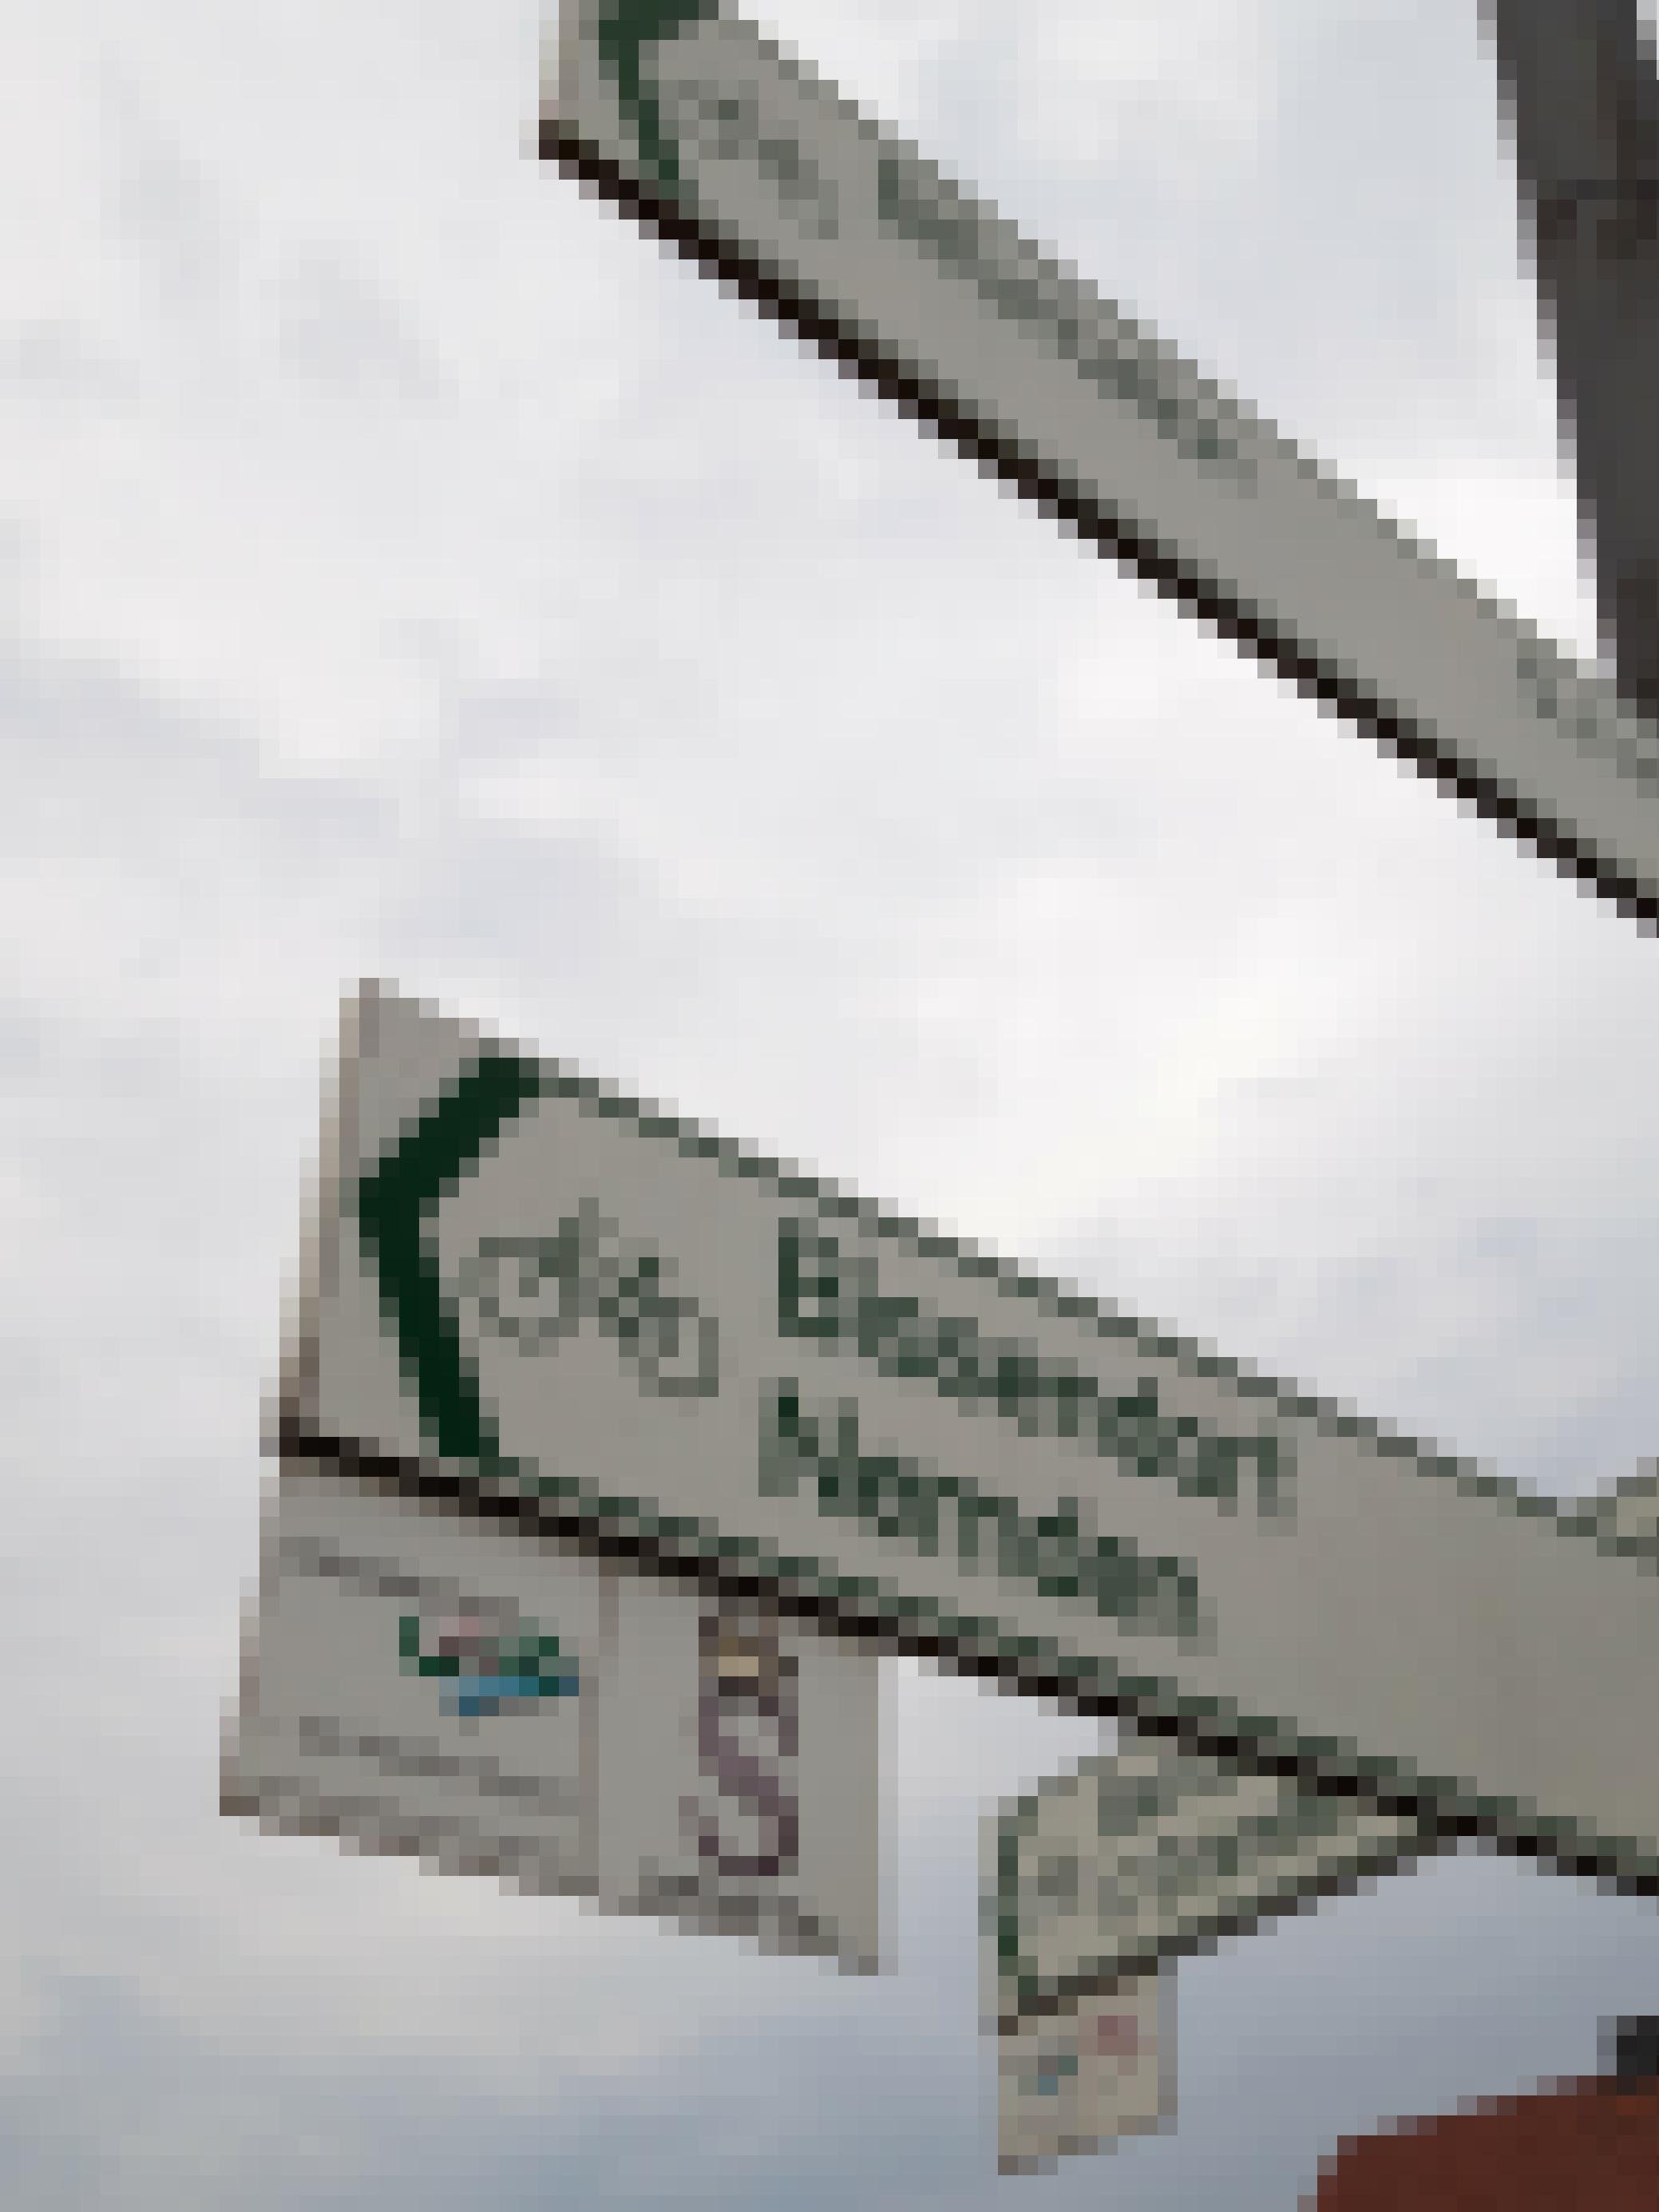 Hinweisschilder für Radfahrer. Zu lesen ist „Bifurkation 5,3 km“ sowie „Bissendorf, Nemden“.